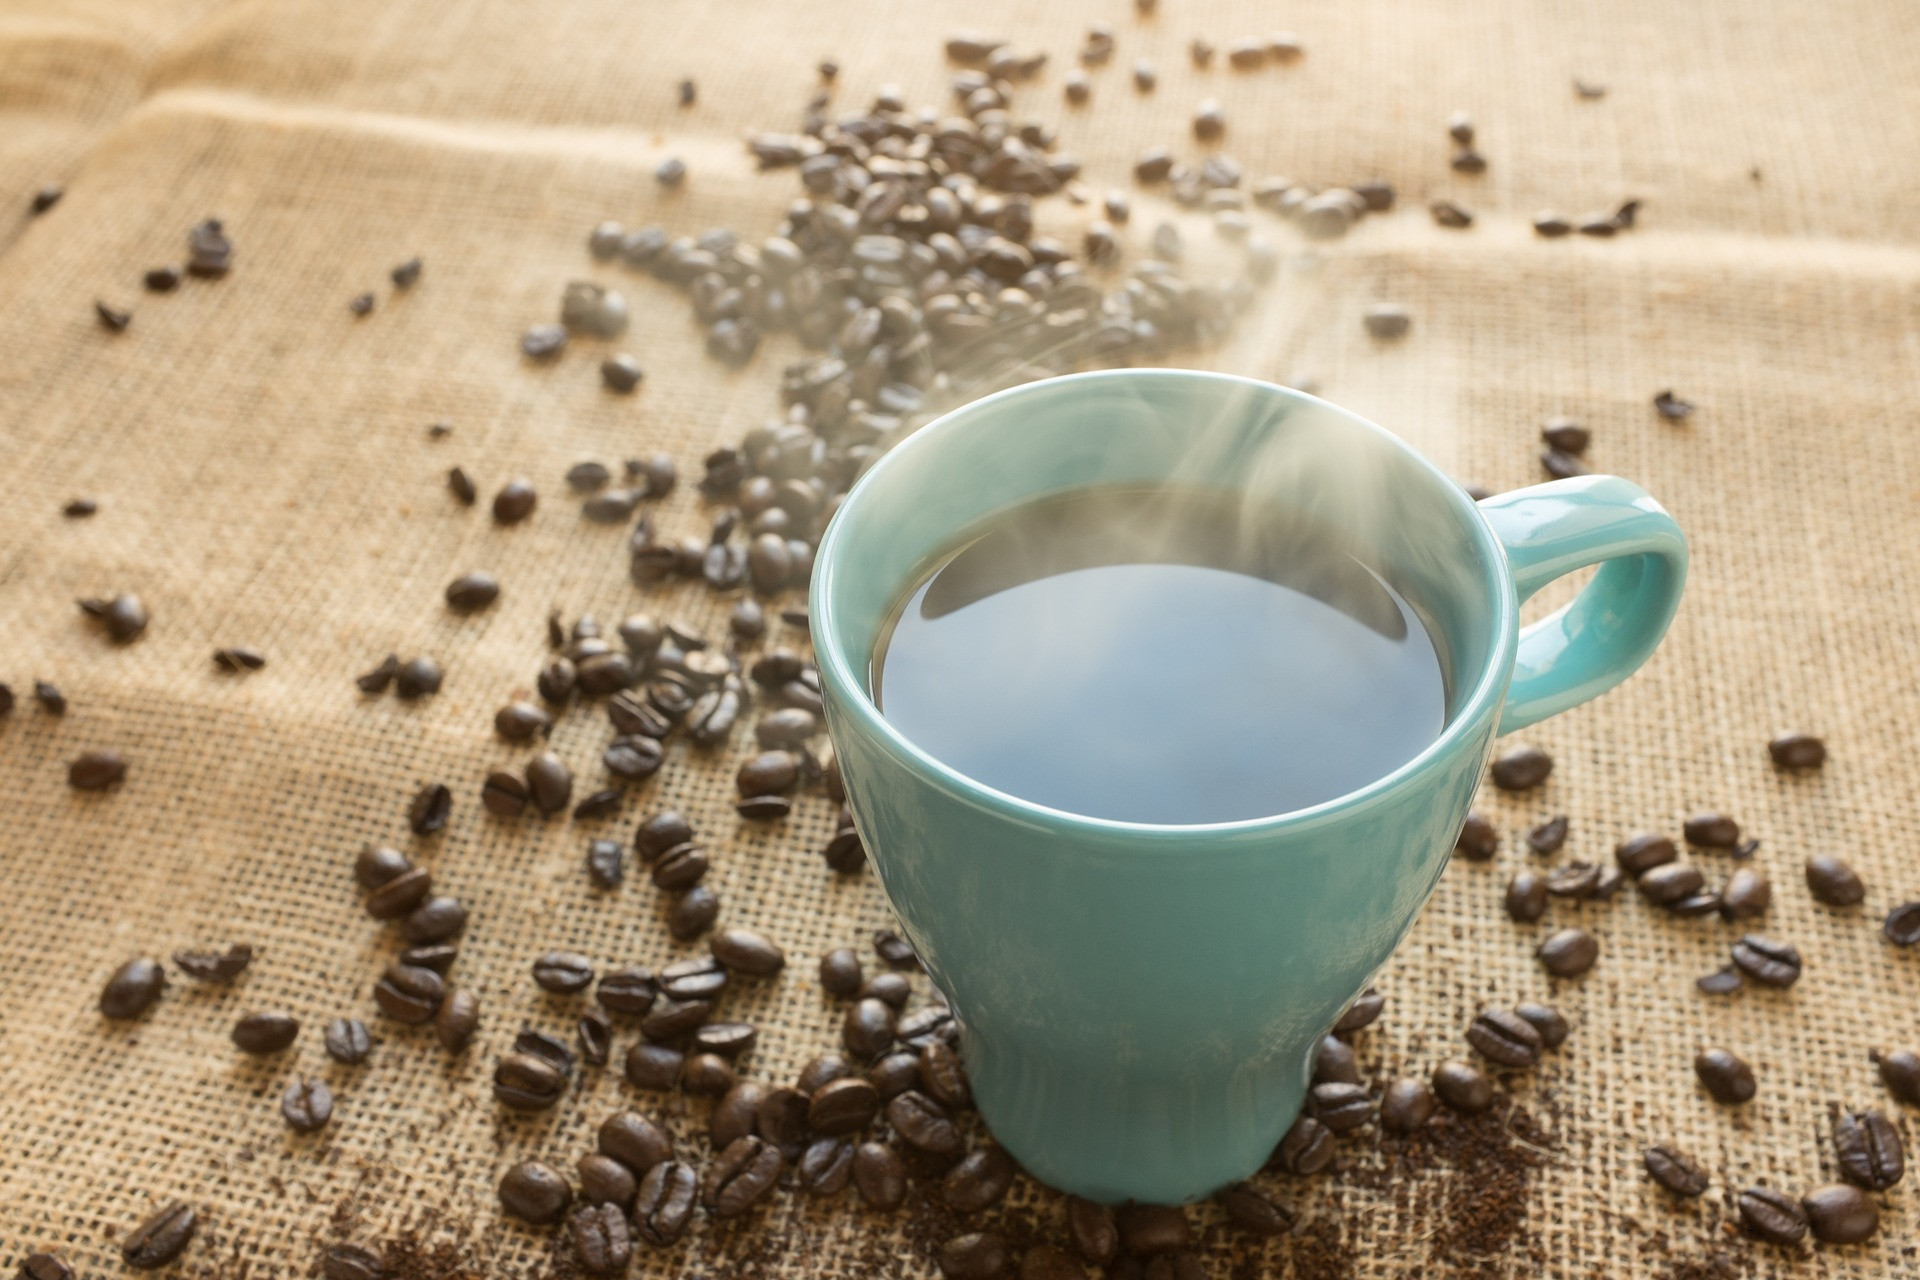 Dokazuje to výskum na 20 000 ľuďoch žijúcich v Stredozemí. Tam sa pije viac kávy ako v iných krajinách. Ľudia, ktorí pijú najmenej štyri šálky kávy denne, majú o 64 percent nižšie riziko úmrtia na akúkoľvek chorobu, vrátane kardiovaskulárneho ochorenia, než tí, ktorí nepijú kávu.

A s každou ďalšou šálkou kávy sa tento pozitívny účinok zvyšuje, a to najmä u osôb starších ako 45 rokov. Autori výskumu nehovoria, aký je limit v spotrebe kávy. Je potrebné riadiť sa zdravým rozumom.